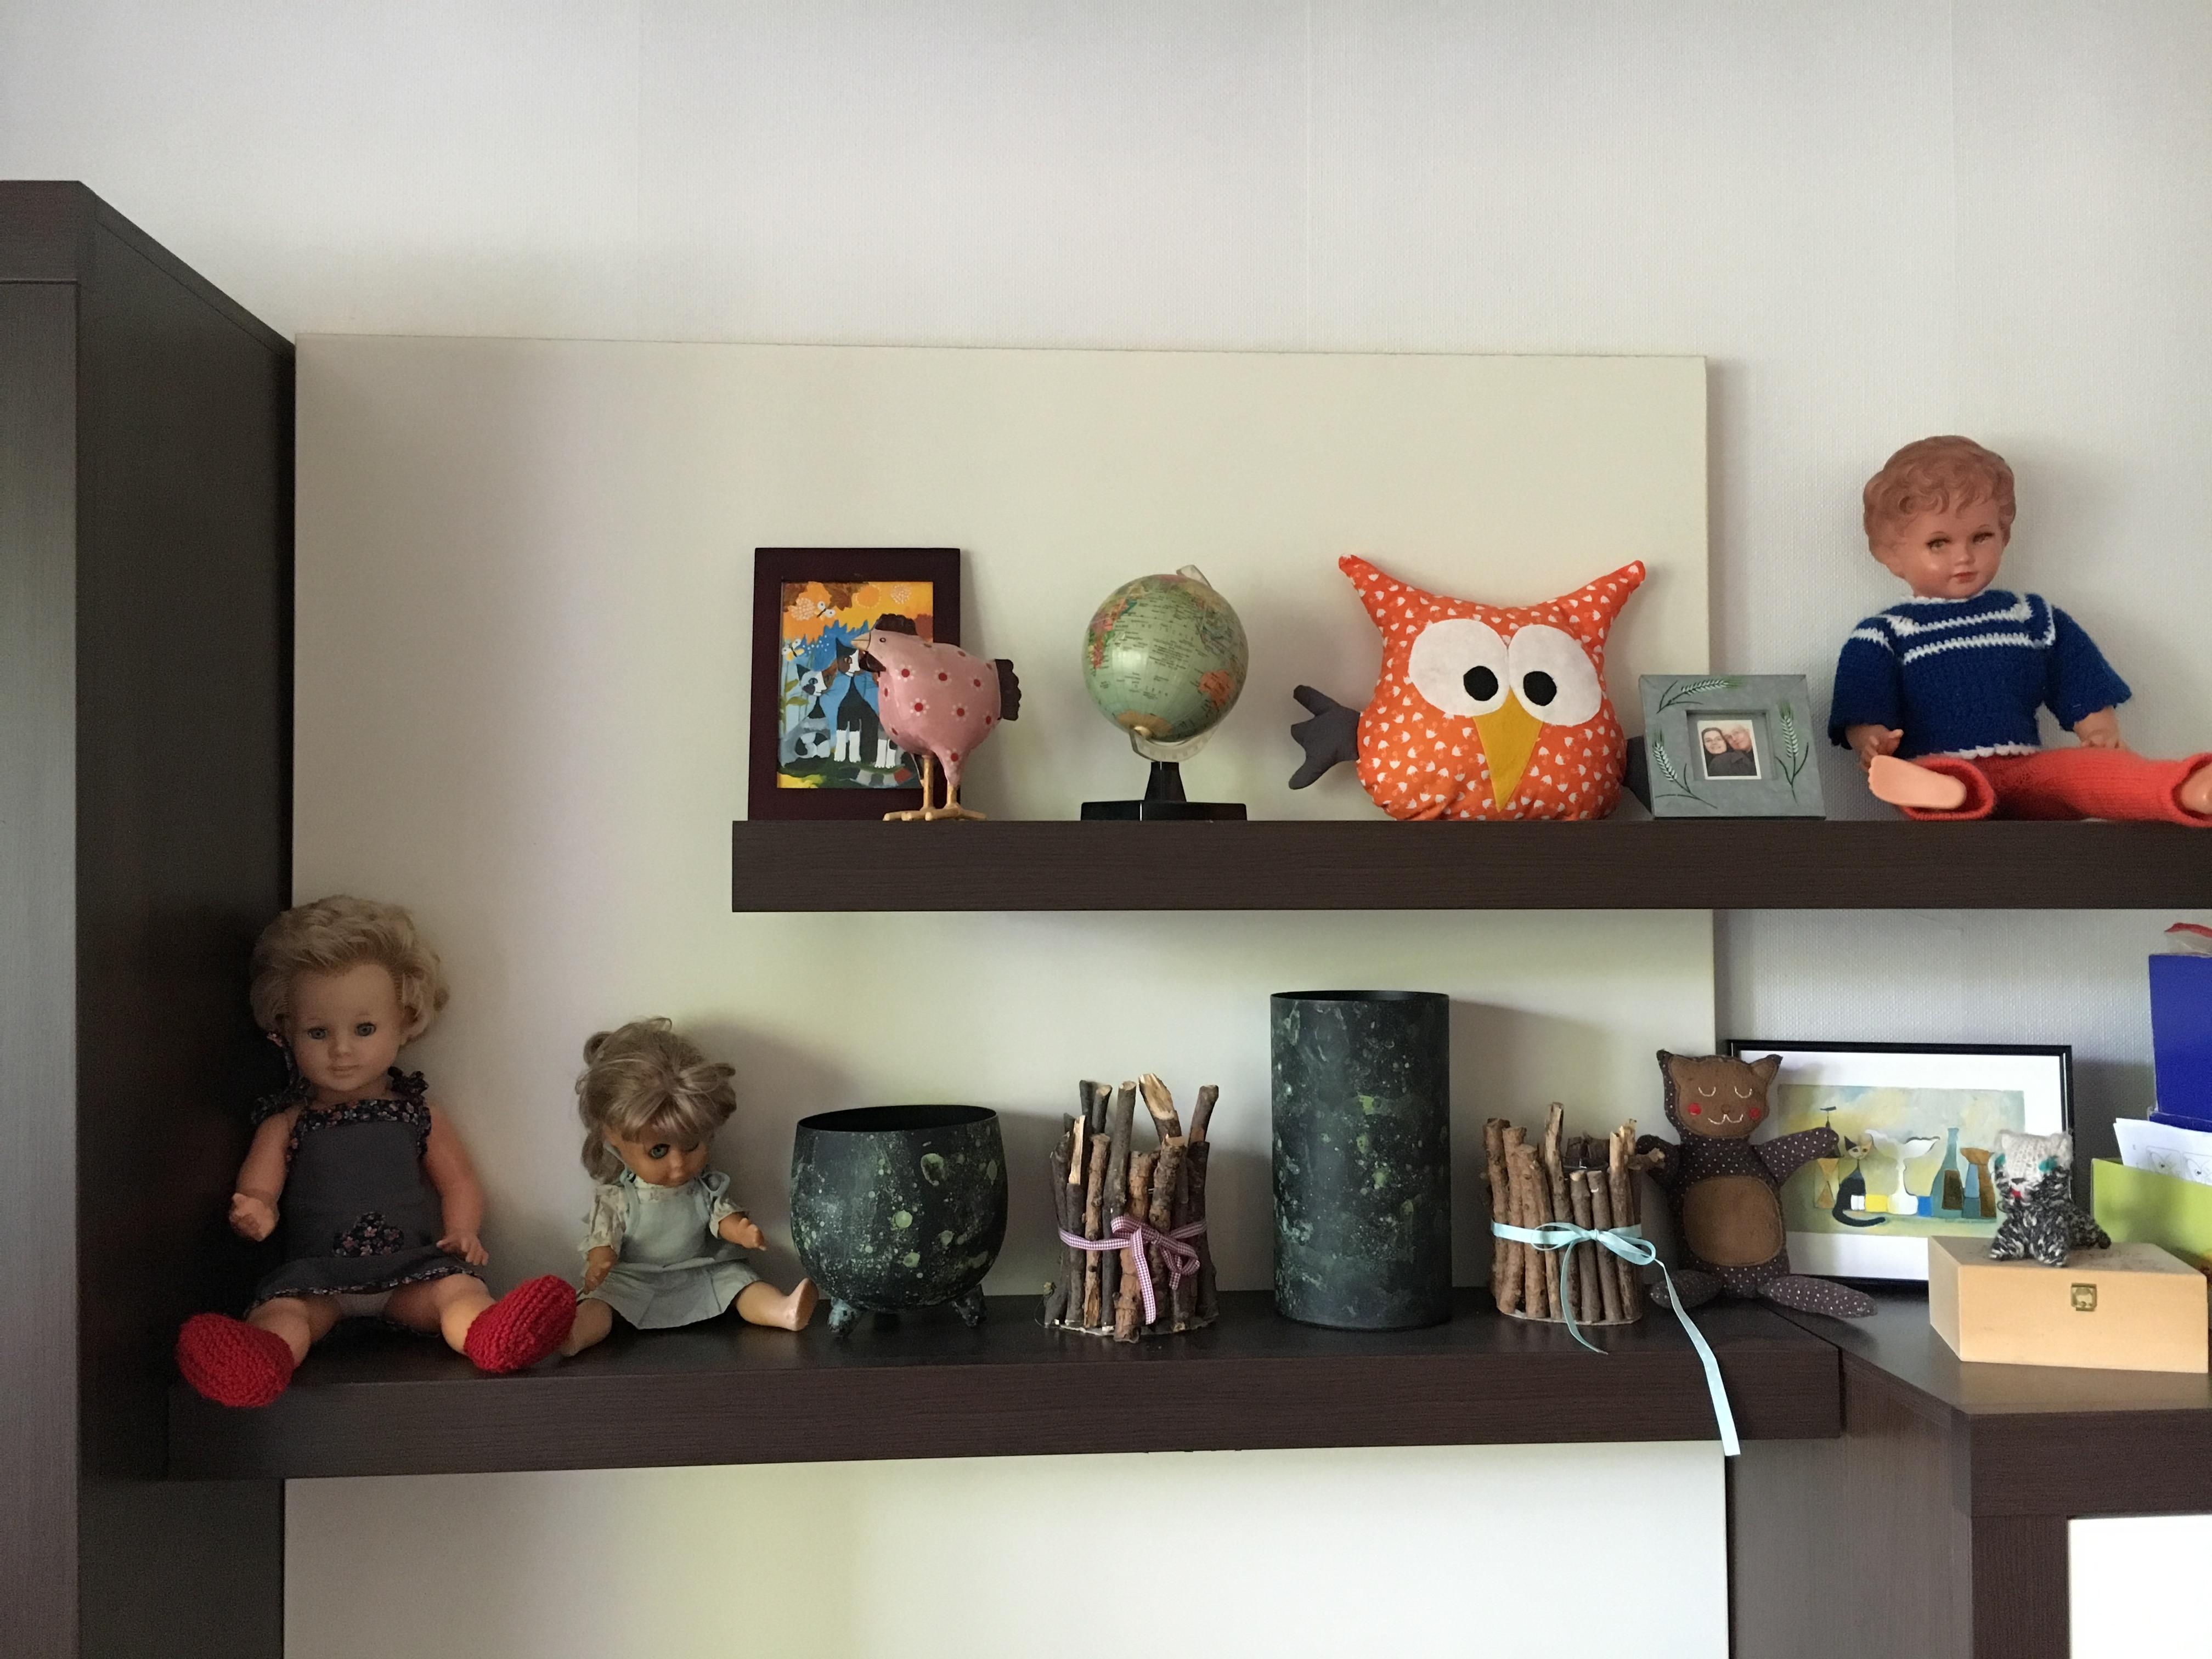 #livingchallenge #wohnzimmer nach unserem umzug herrscht noch Chaos, aber dieses Regal mit alten Puppen  ist schön